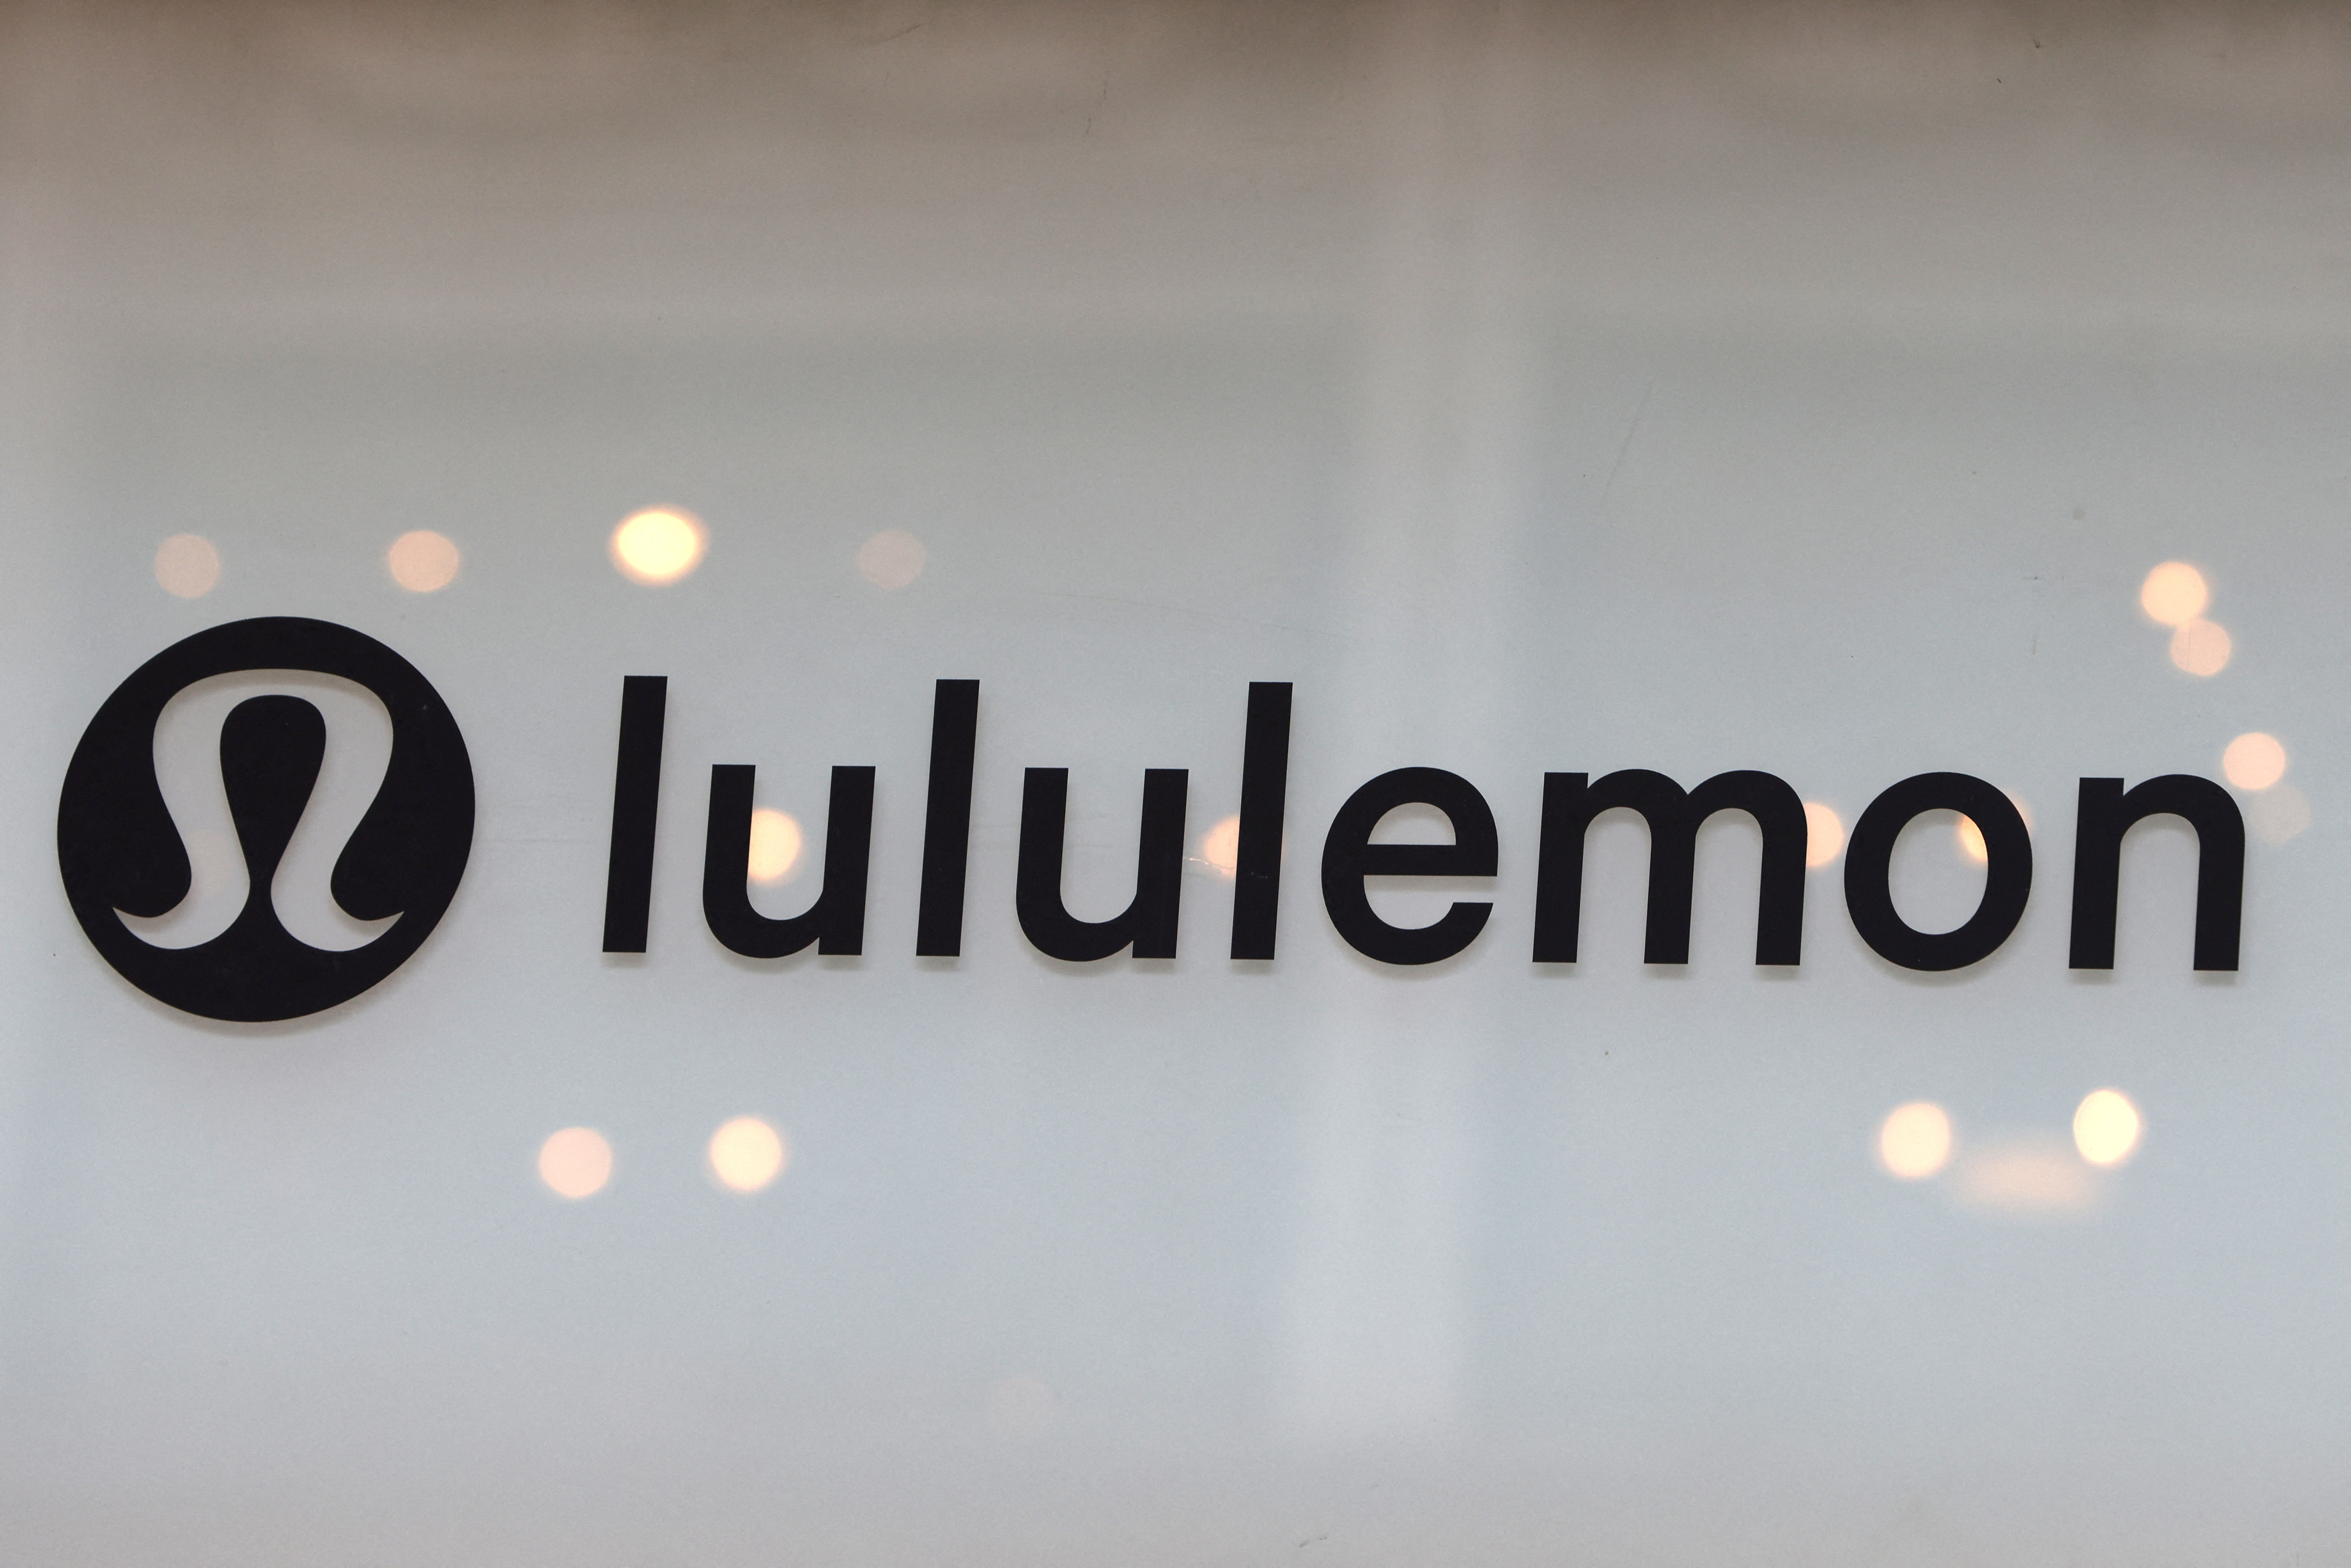 Lululemon yoga wear company reports a lower Q1 profit but higher revenues